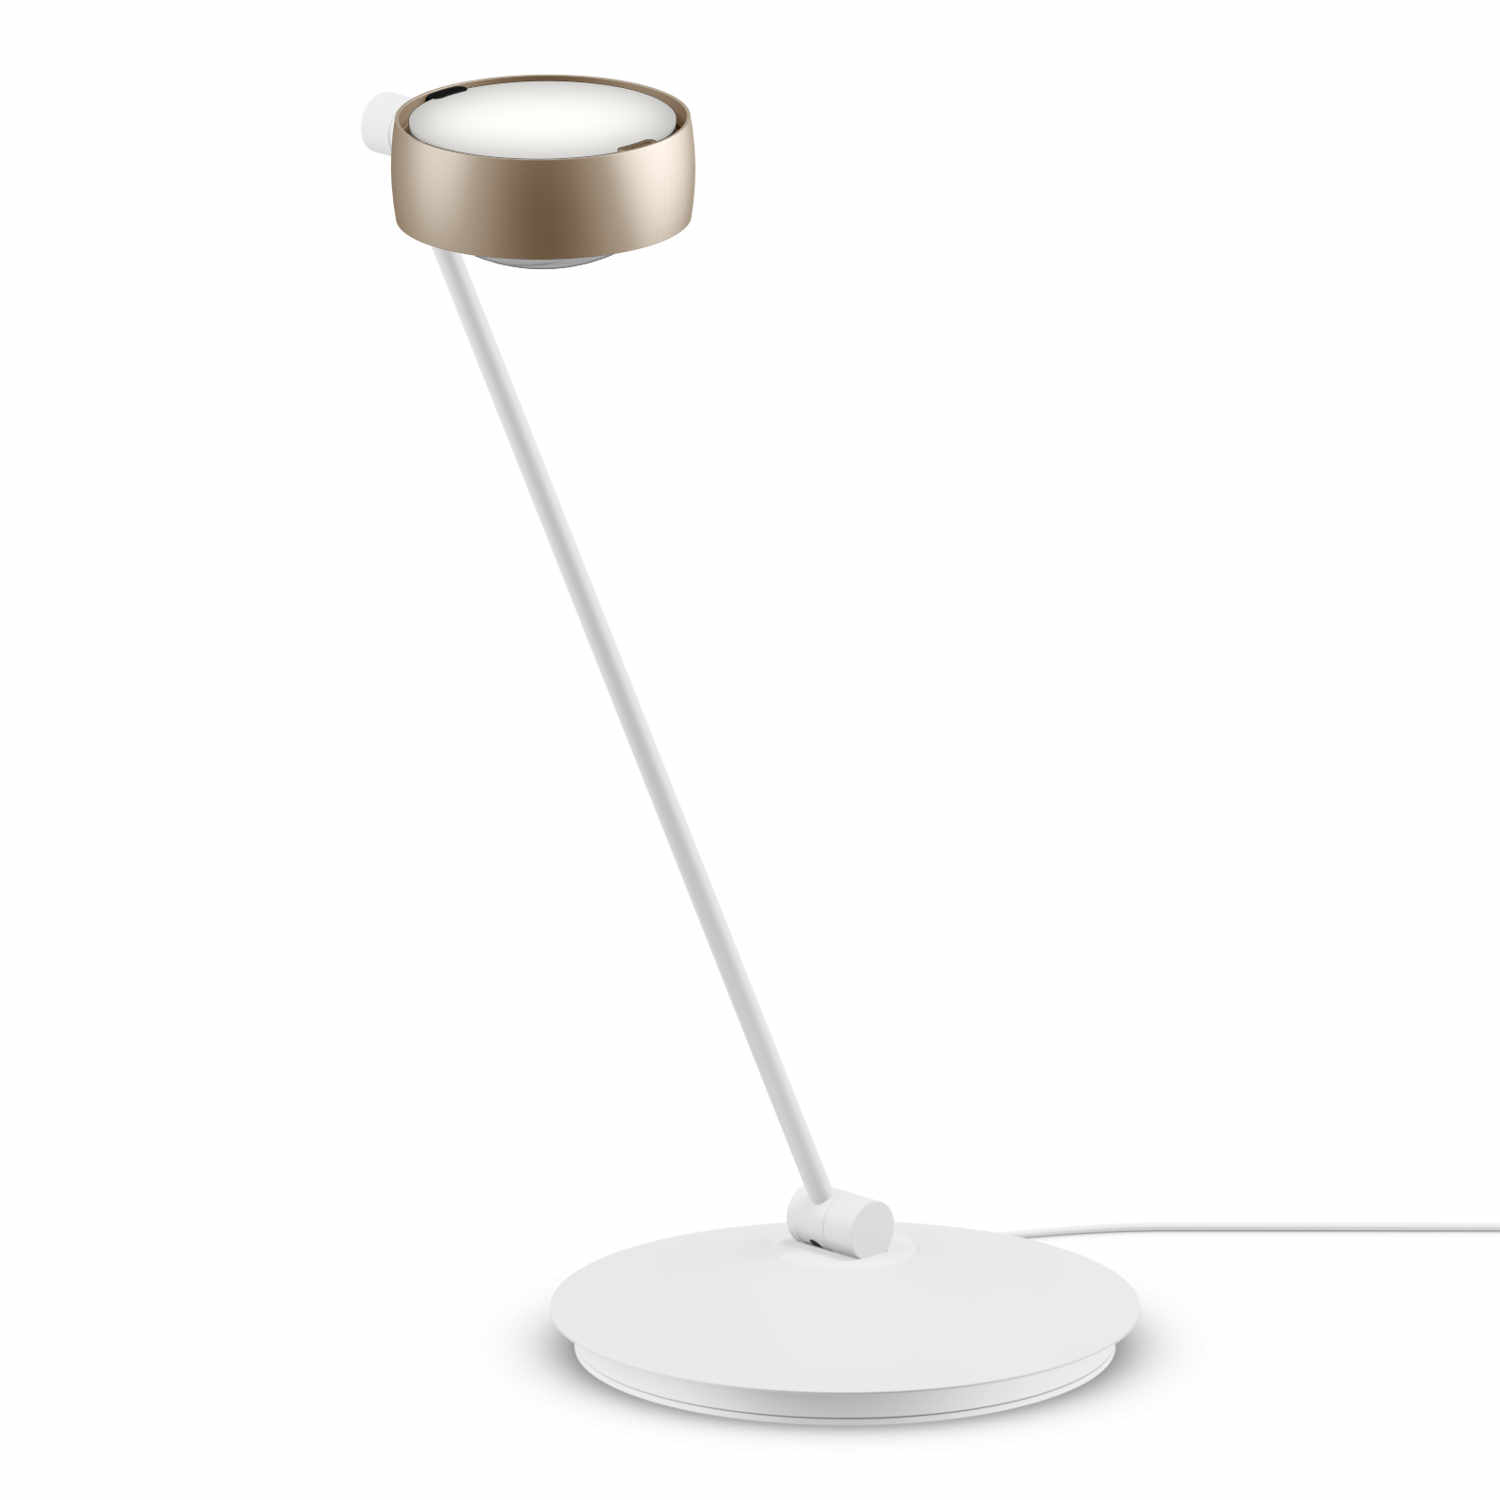 Sento Tavolo LED Tischleuchte, Grösse höhe 60 cm, Kopf / Body / Fuss gold matt / weiss matt / weiss matt, Ausrichtung rechts